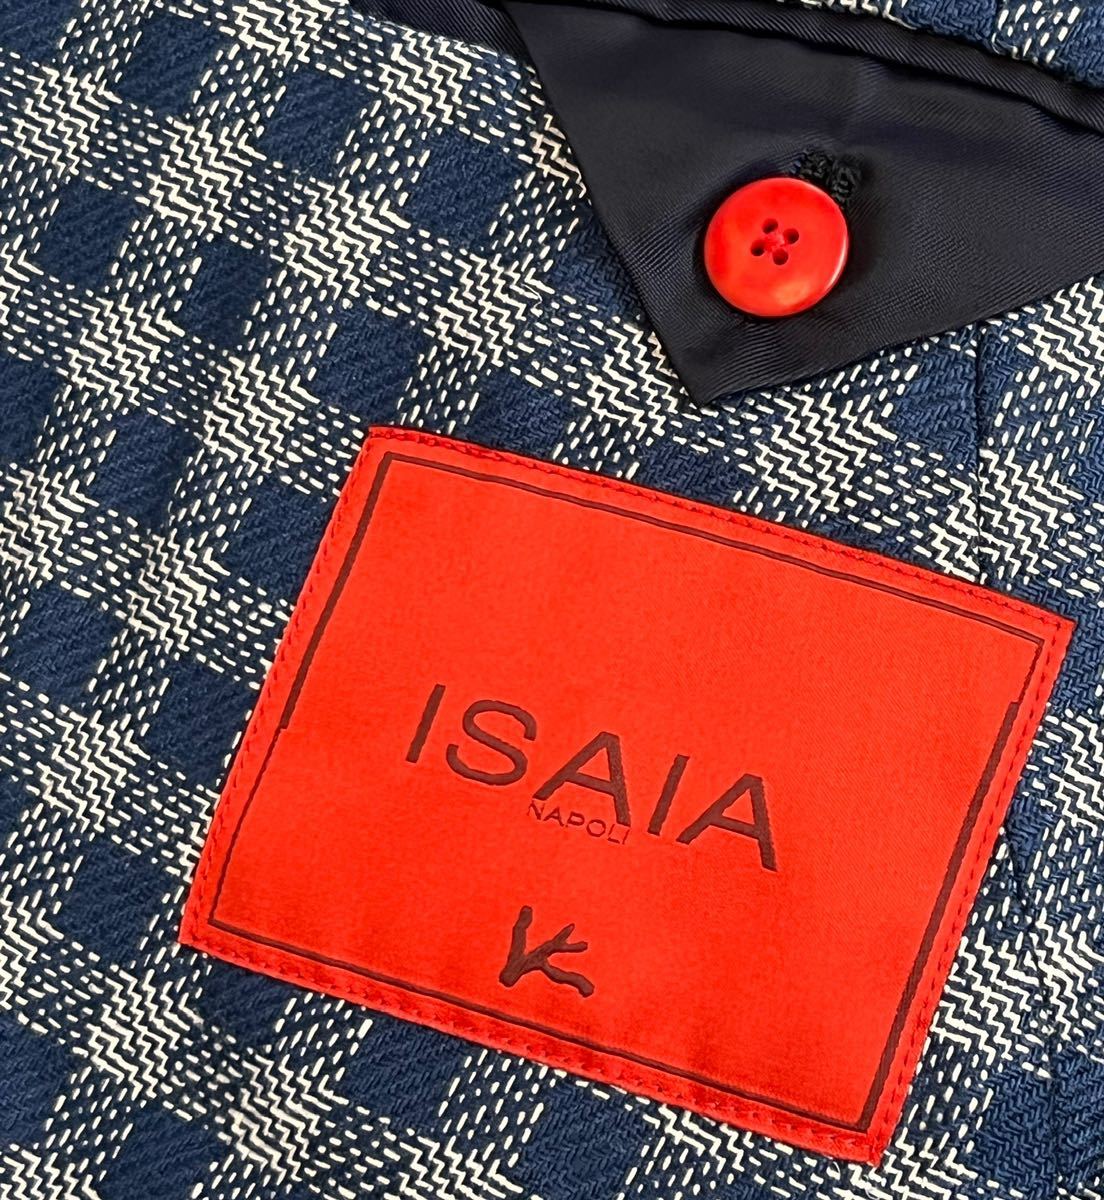 ISAIA イザイア ブルーネイビーホワイト系 サイズ 46 S〜M テーラード ジャケット シルク 100% イタリア製 チェック_画像5